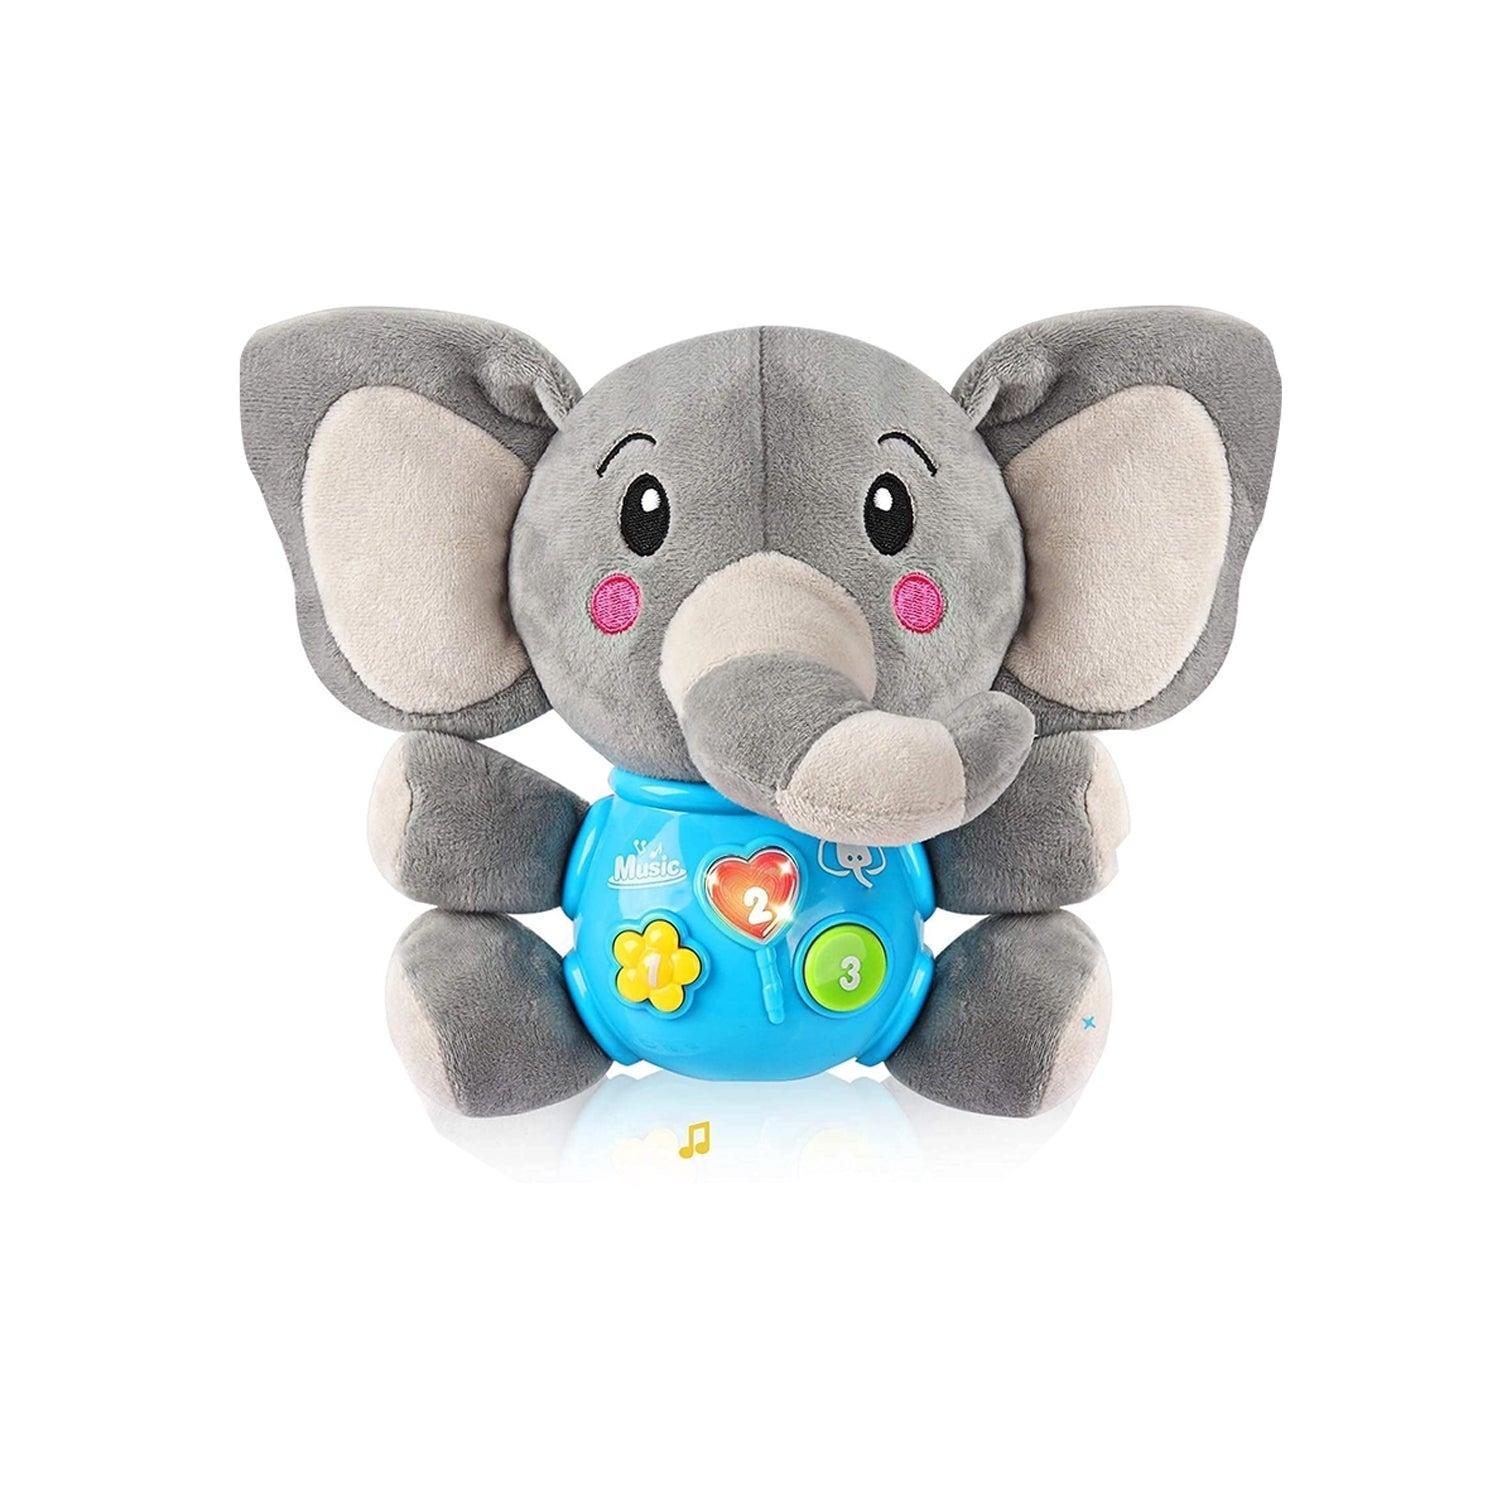 Plush Elephant Music Toys